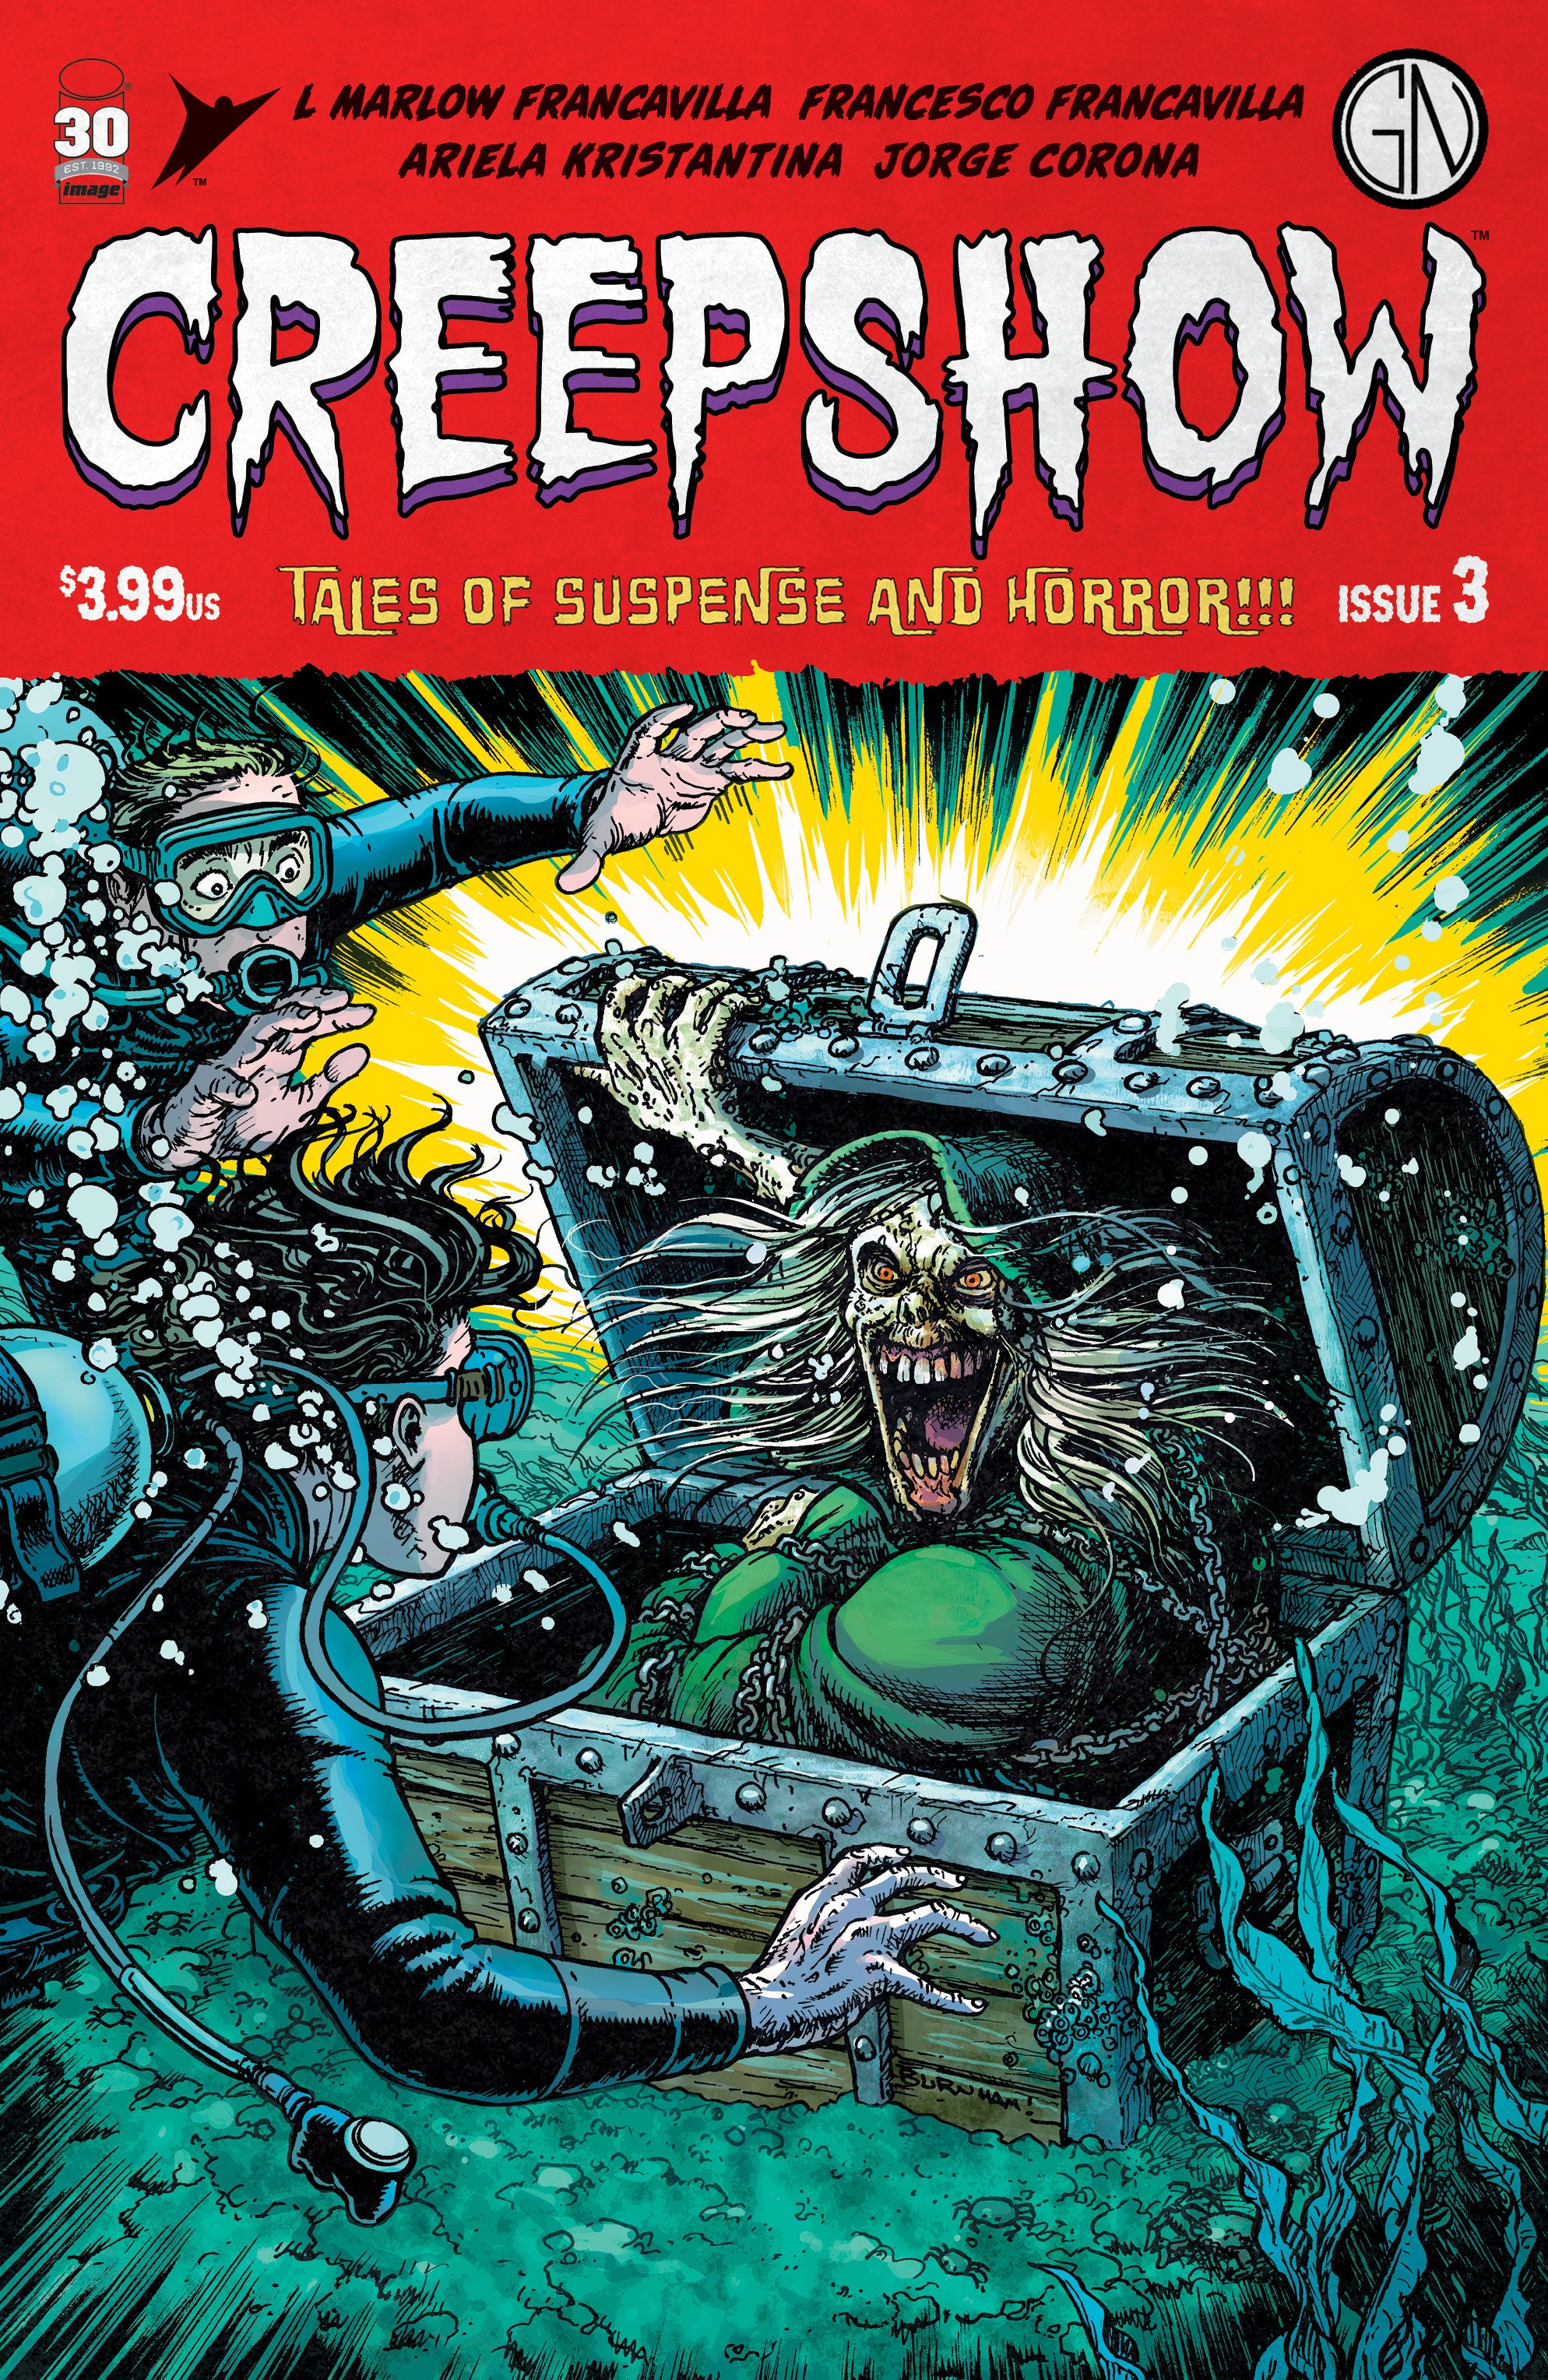 Creepshow #3 cover